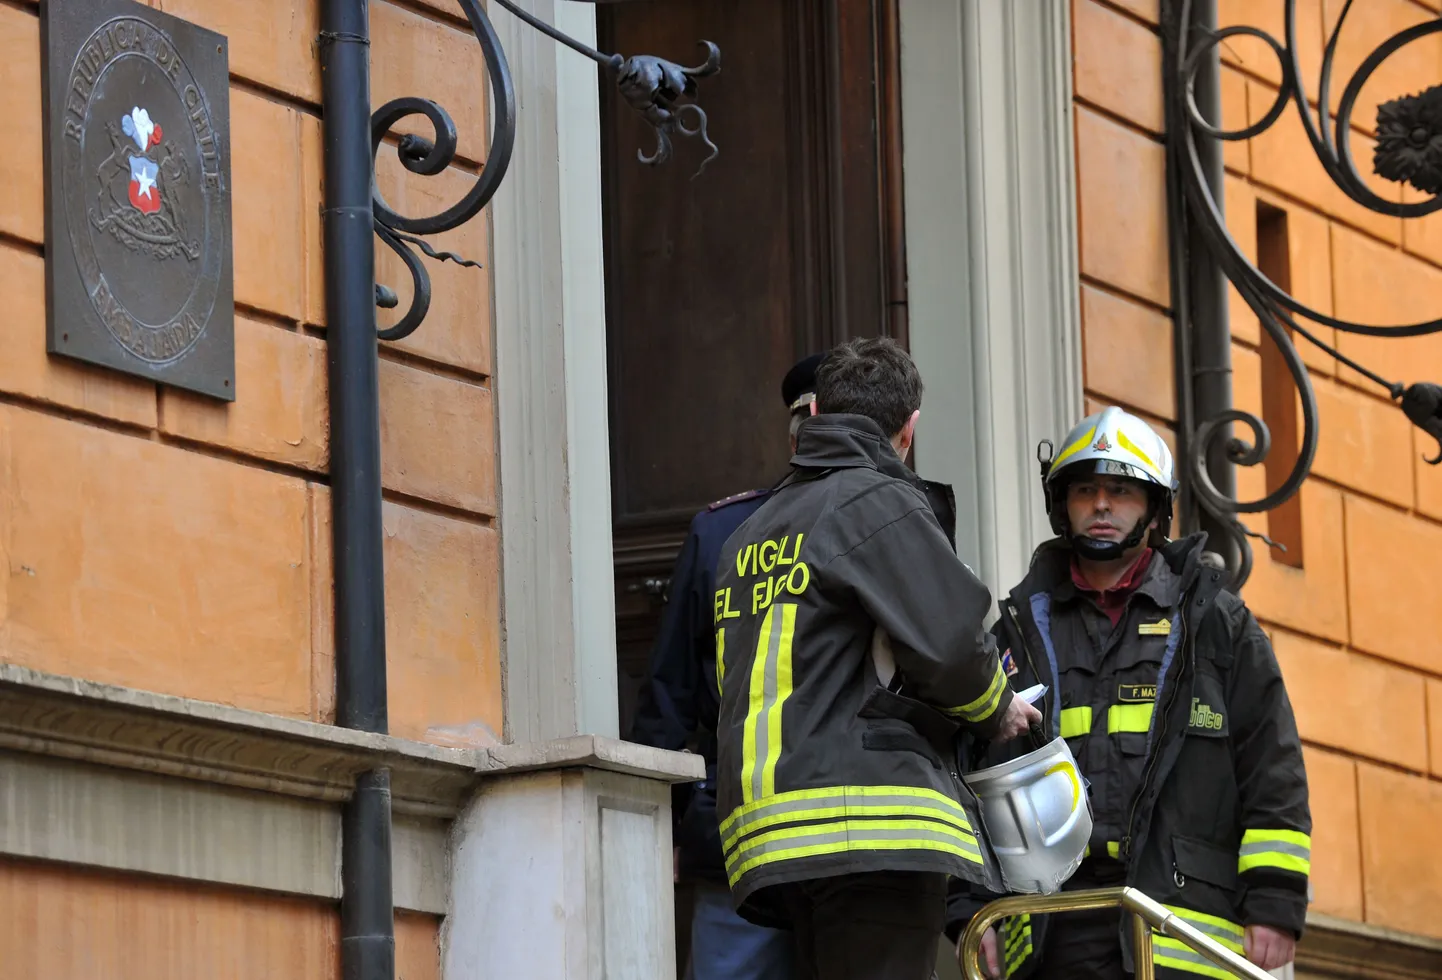 Itaalia tuletõrjujad Tšiili saatkonna juures Roomas.